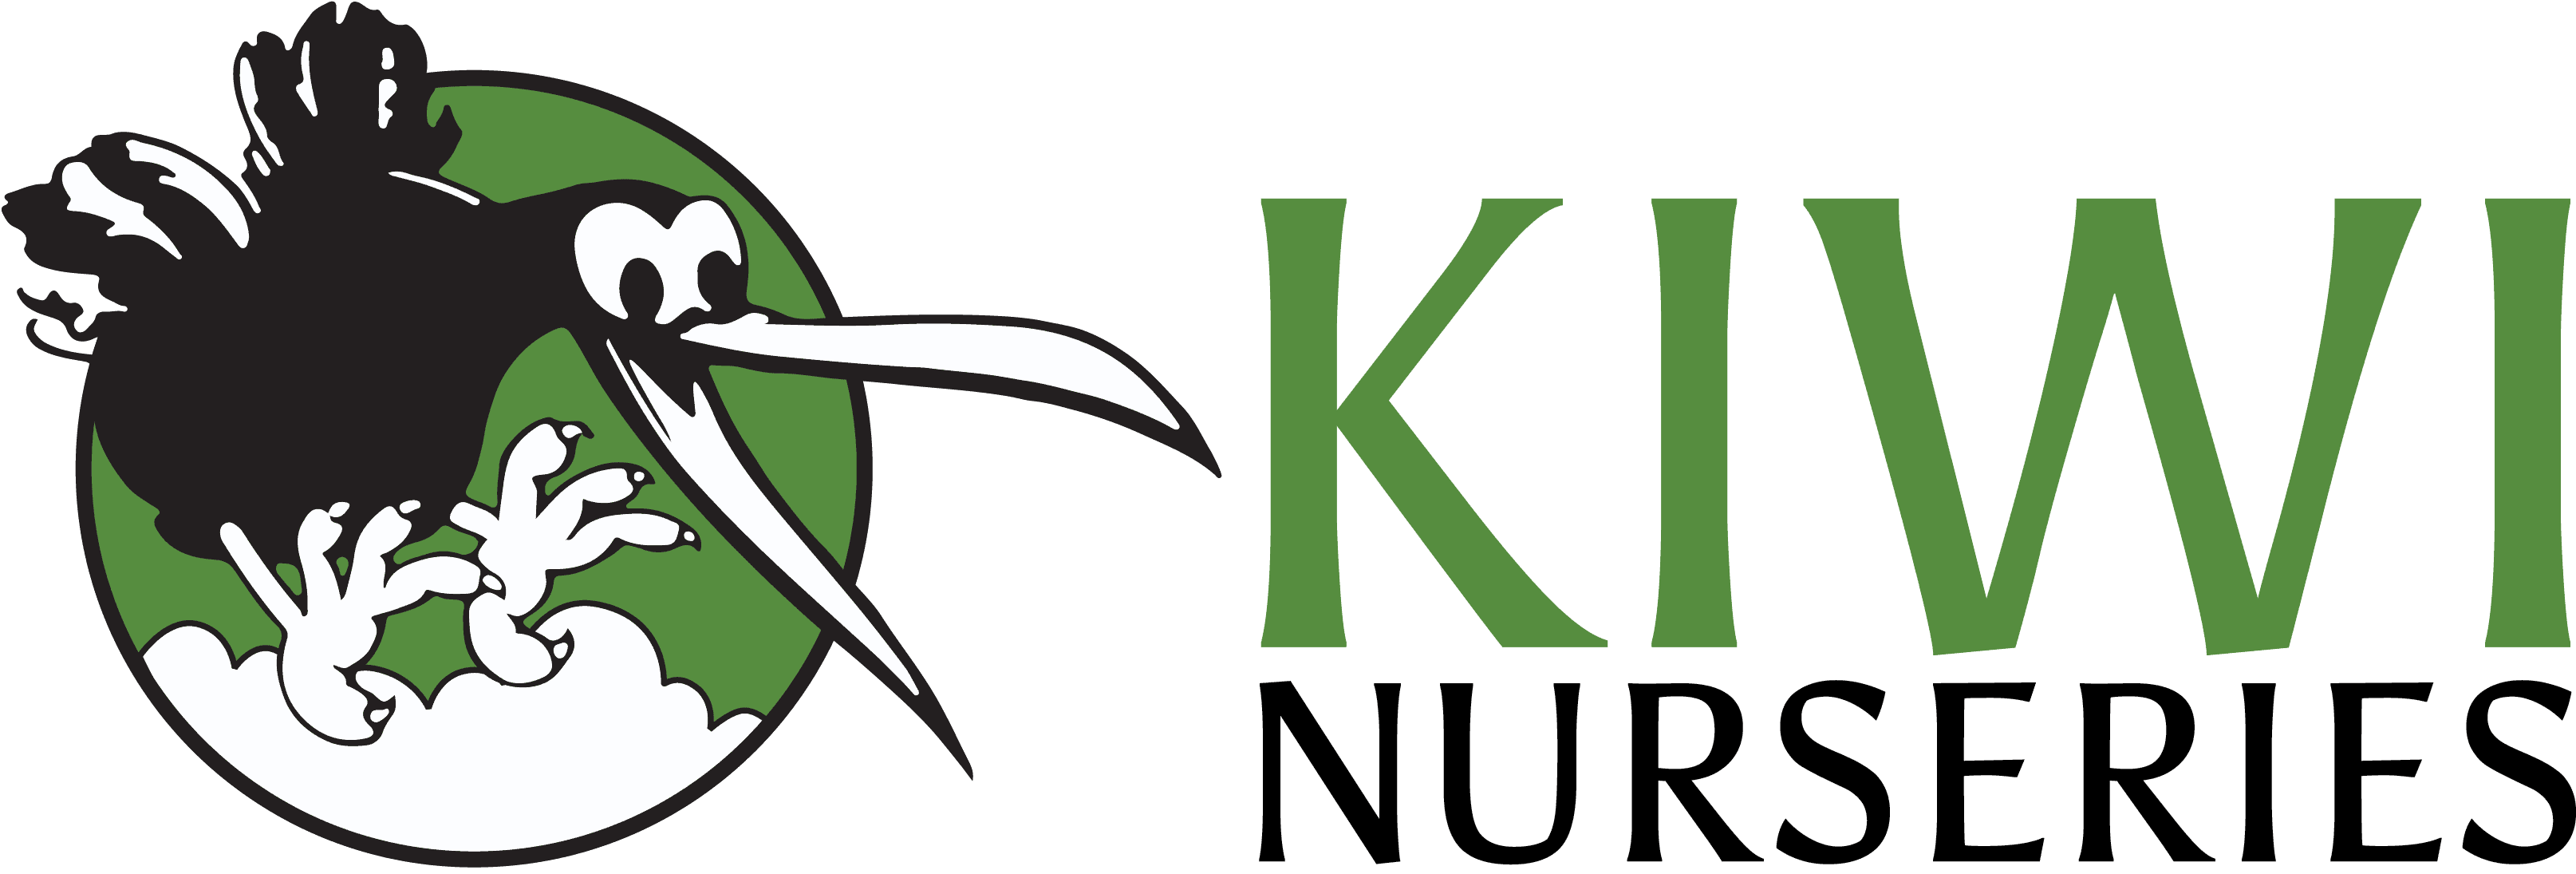 Kiwi-Horizontal-Logo-2019